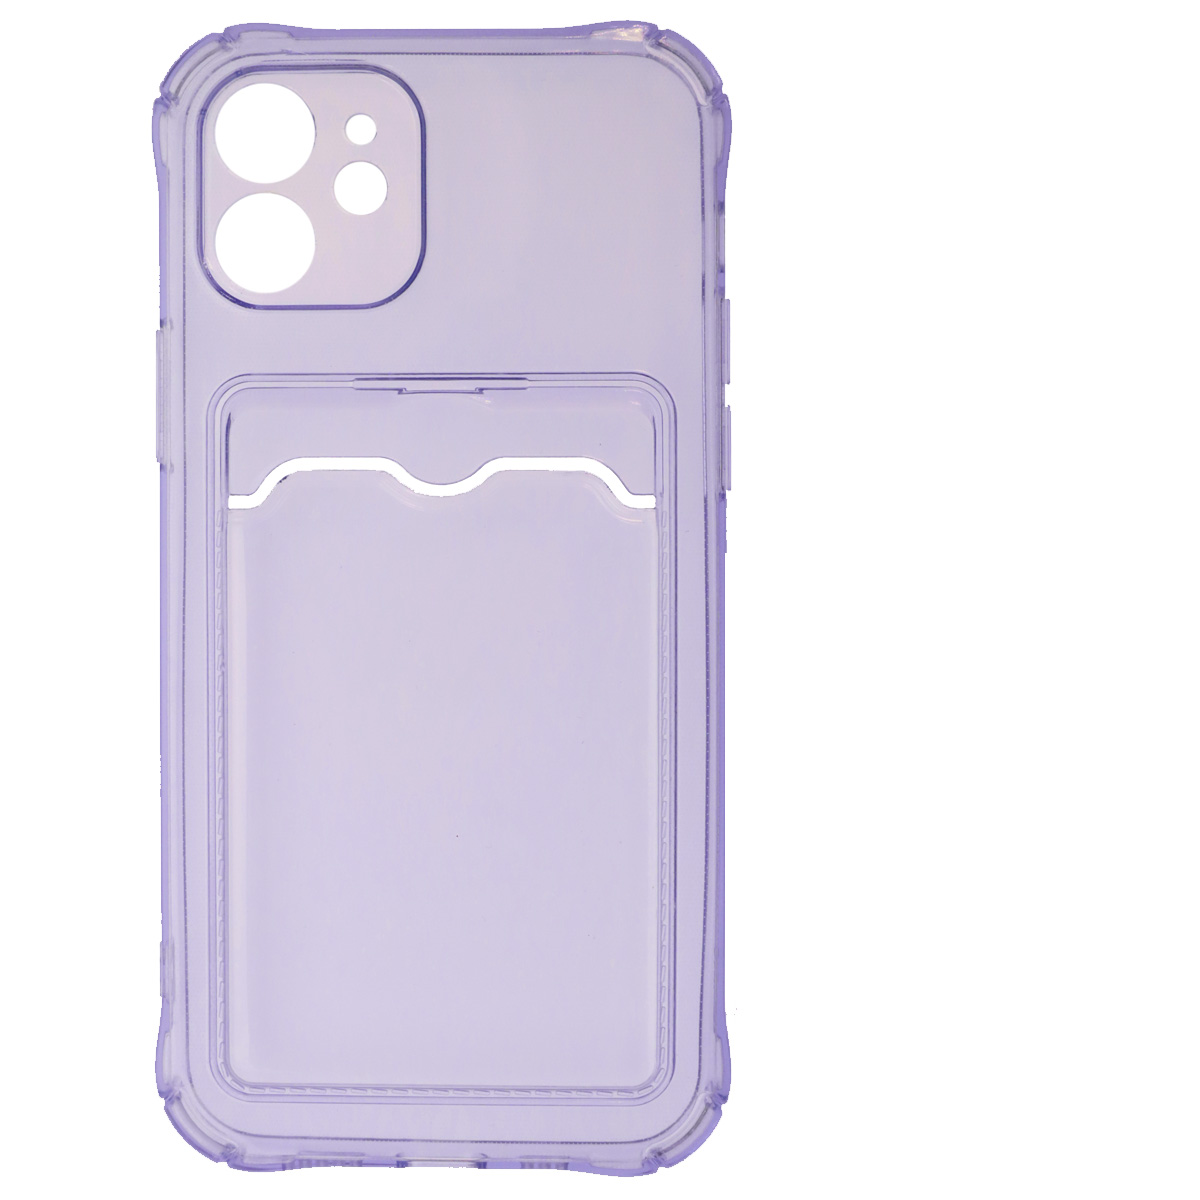 Чехол накладка для APPLE iPhone 12 (6.1), силикон, отдел для карт, цвет прозрачно сиреневый